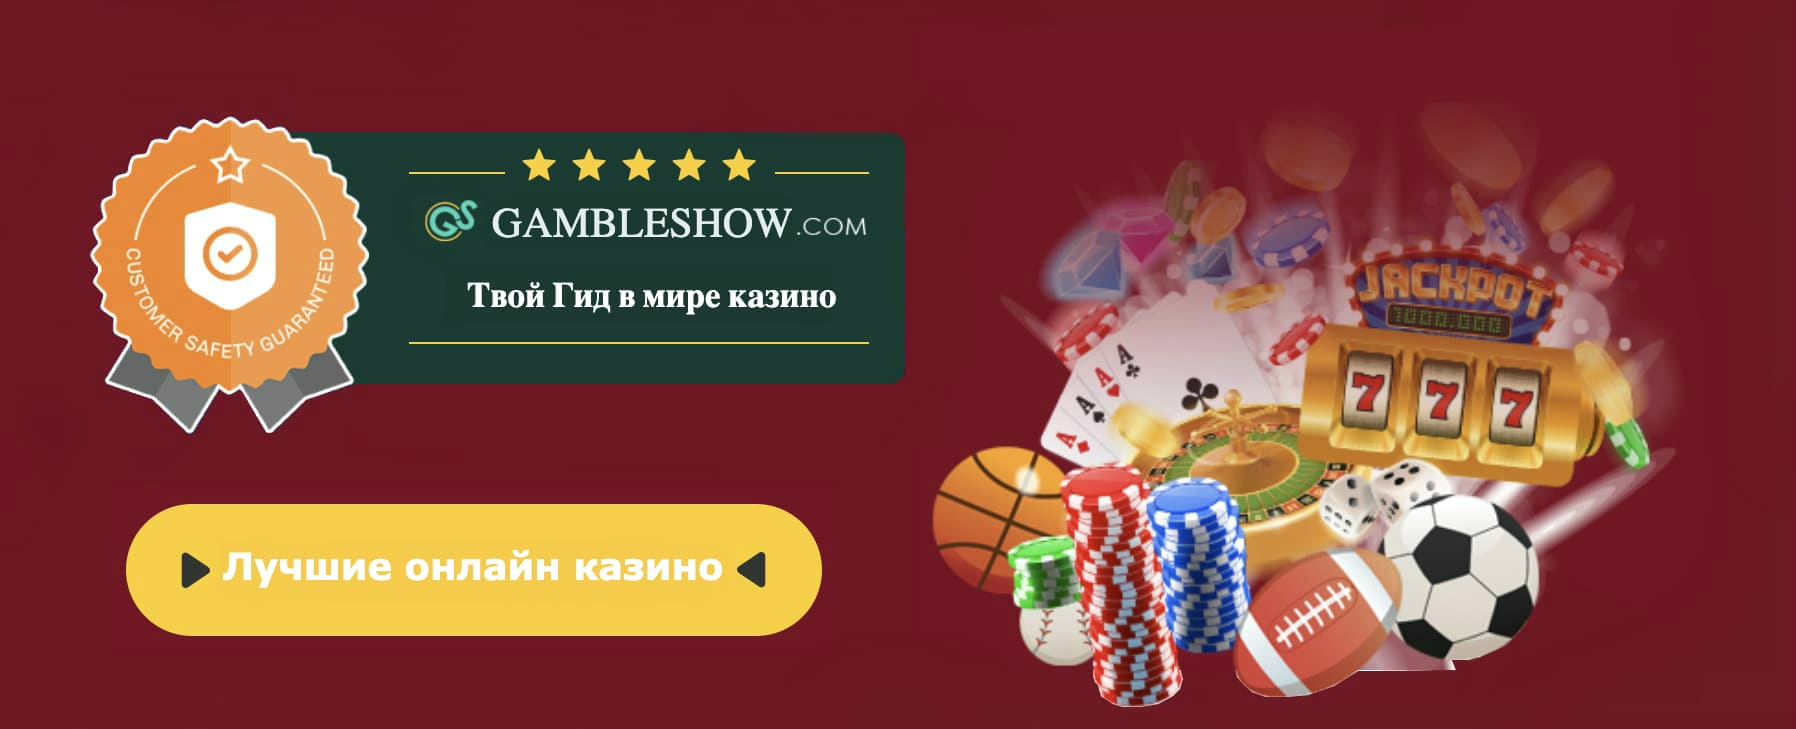 Играть онлайн казино бесплатно без регистрации слоты